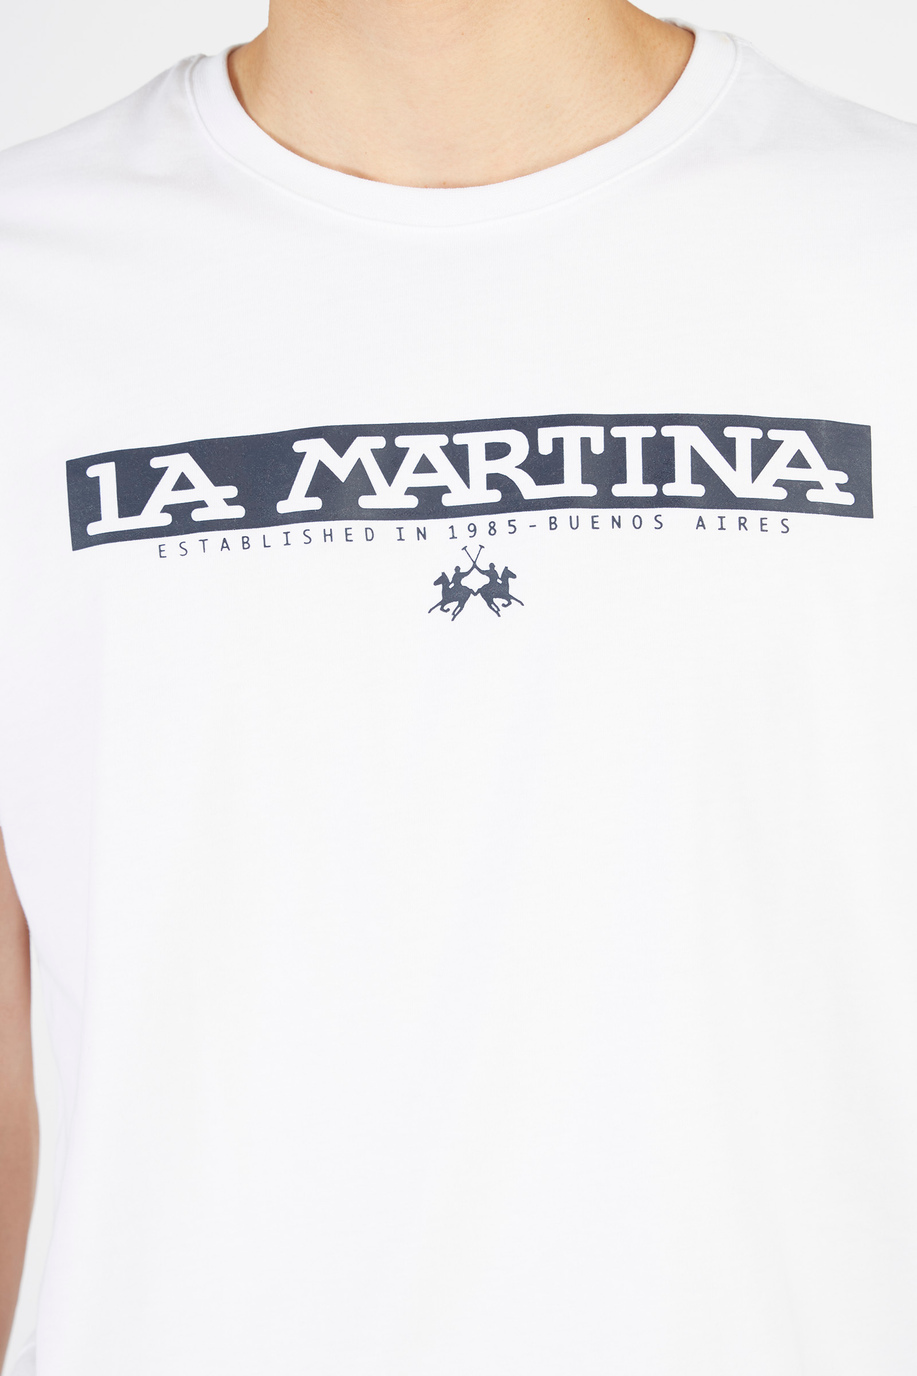 Men’s short-sleeved regular fit crew neck t-shirt - Gifts under €75 for him | La Martina - Official Online Shop